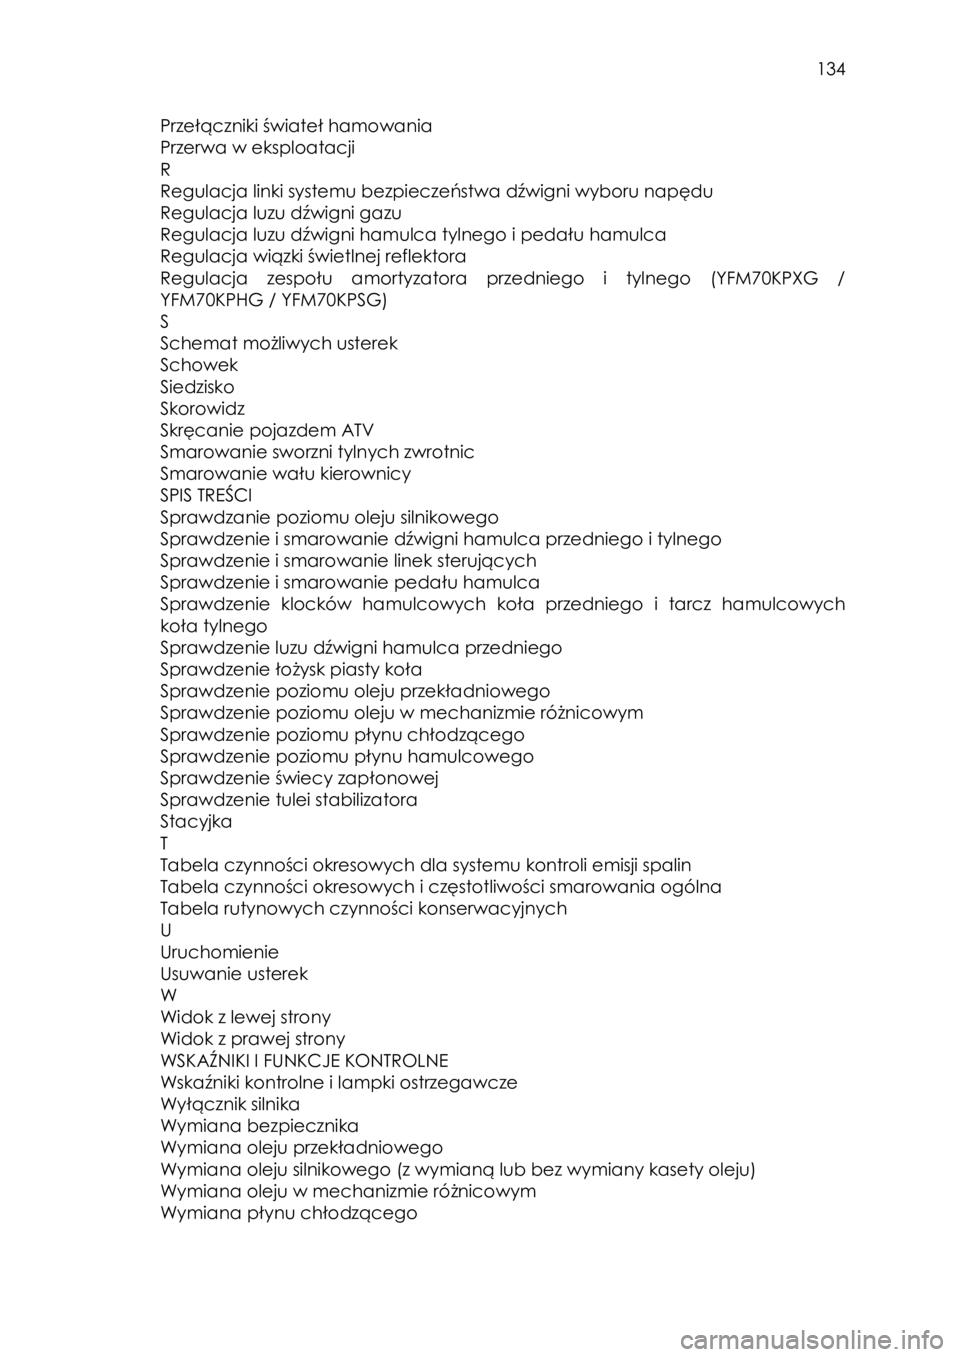 YAMAHA KODIAK 700 2015  Instrukcja obsługi (in Polish)  134 
Przełączniki świateł hamowania 
Przerwa w eksploatacji                     
R 
Regulacja linki systemu bezpieczeństwa dźwigni wyboru napędu  
Regulacja luzu dźwigni gazu                 